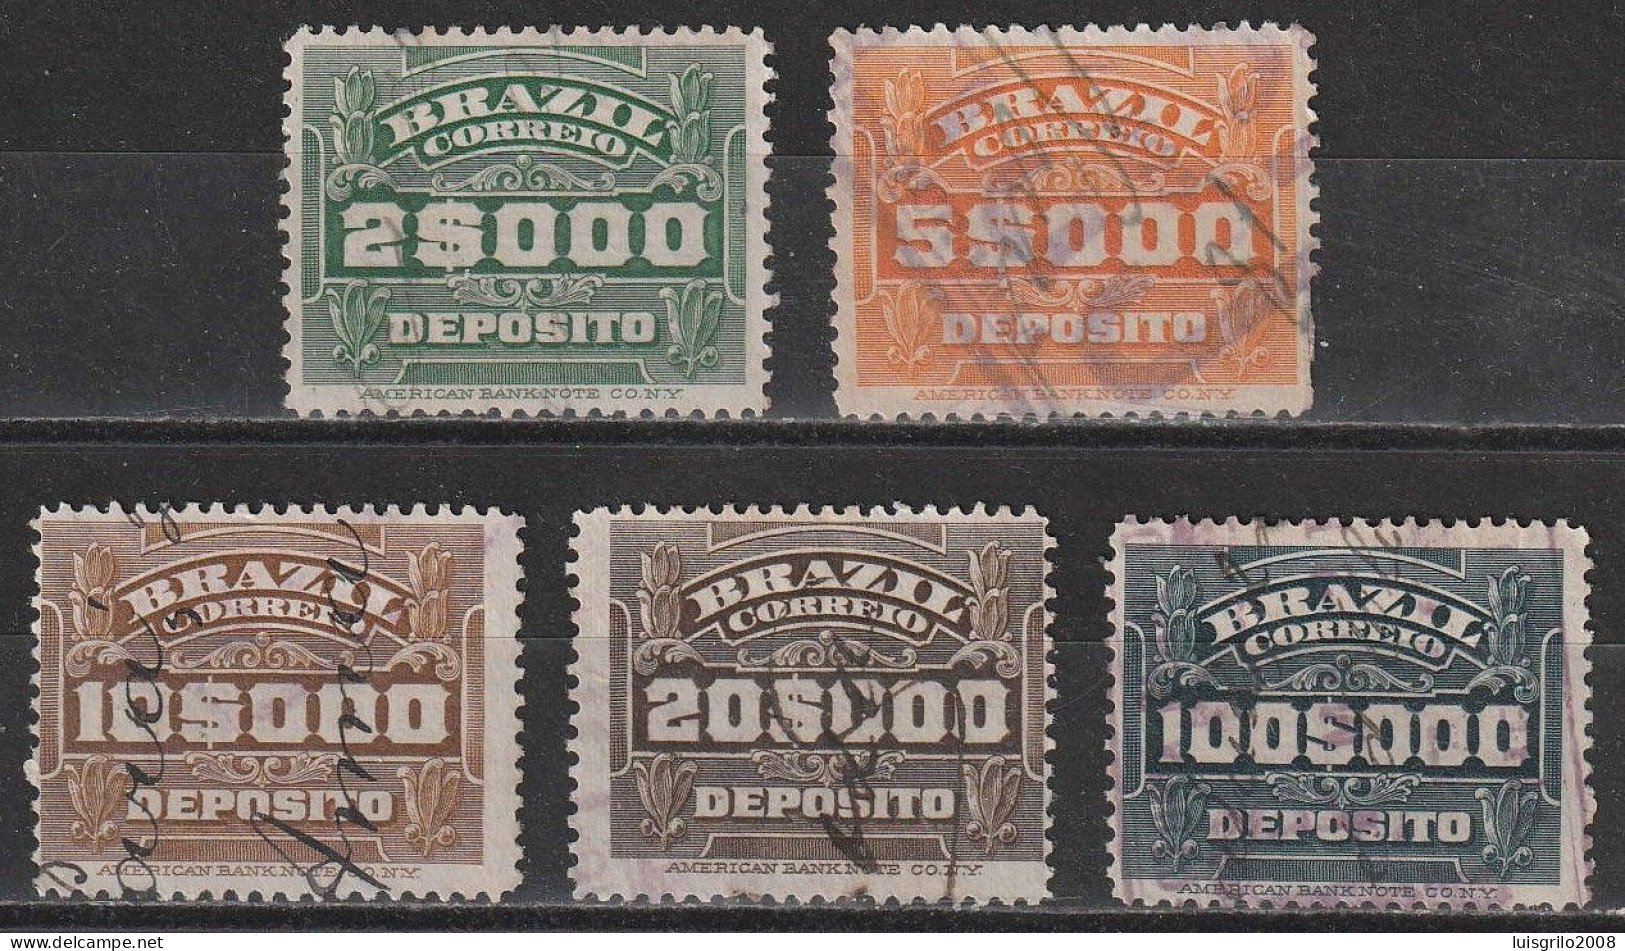 Revenue/ Fiscaux, Brazil 1920 - Depósito, Receita Fiscal -|- 2$000, 5$000, 10$000, 20$000, 100$000 - Postage Due